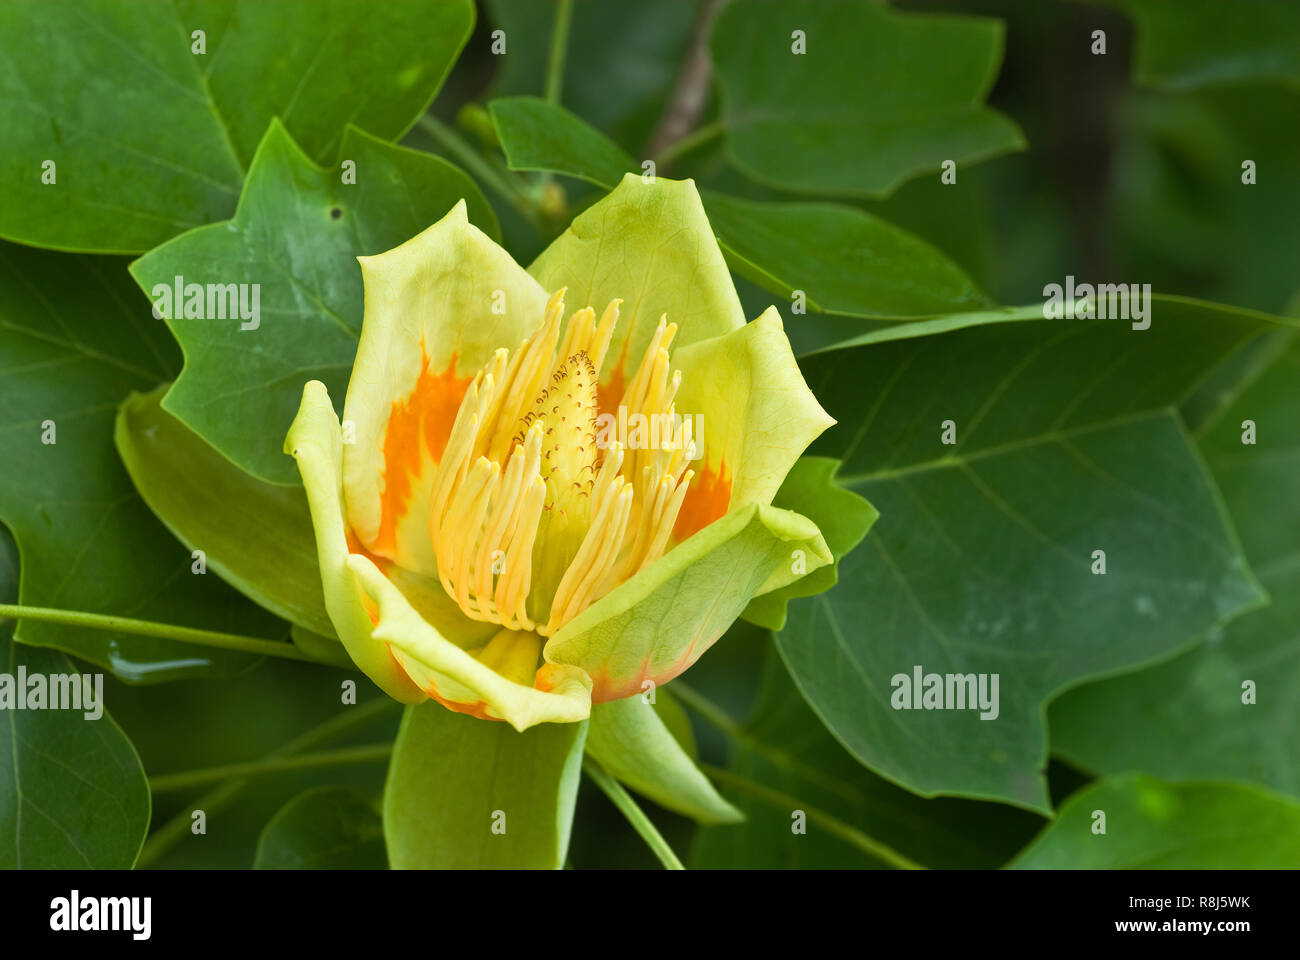 Blume des Tulip poplar (Liriodendron tulipifera). Baum ist für die Tulip genannt - wie Form der Blüten und Blätter. Stockfoto